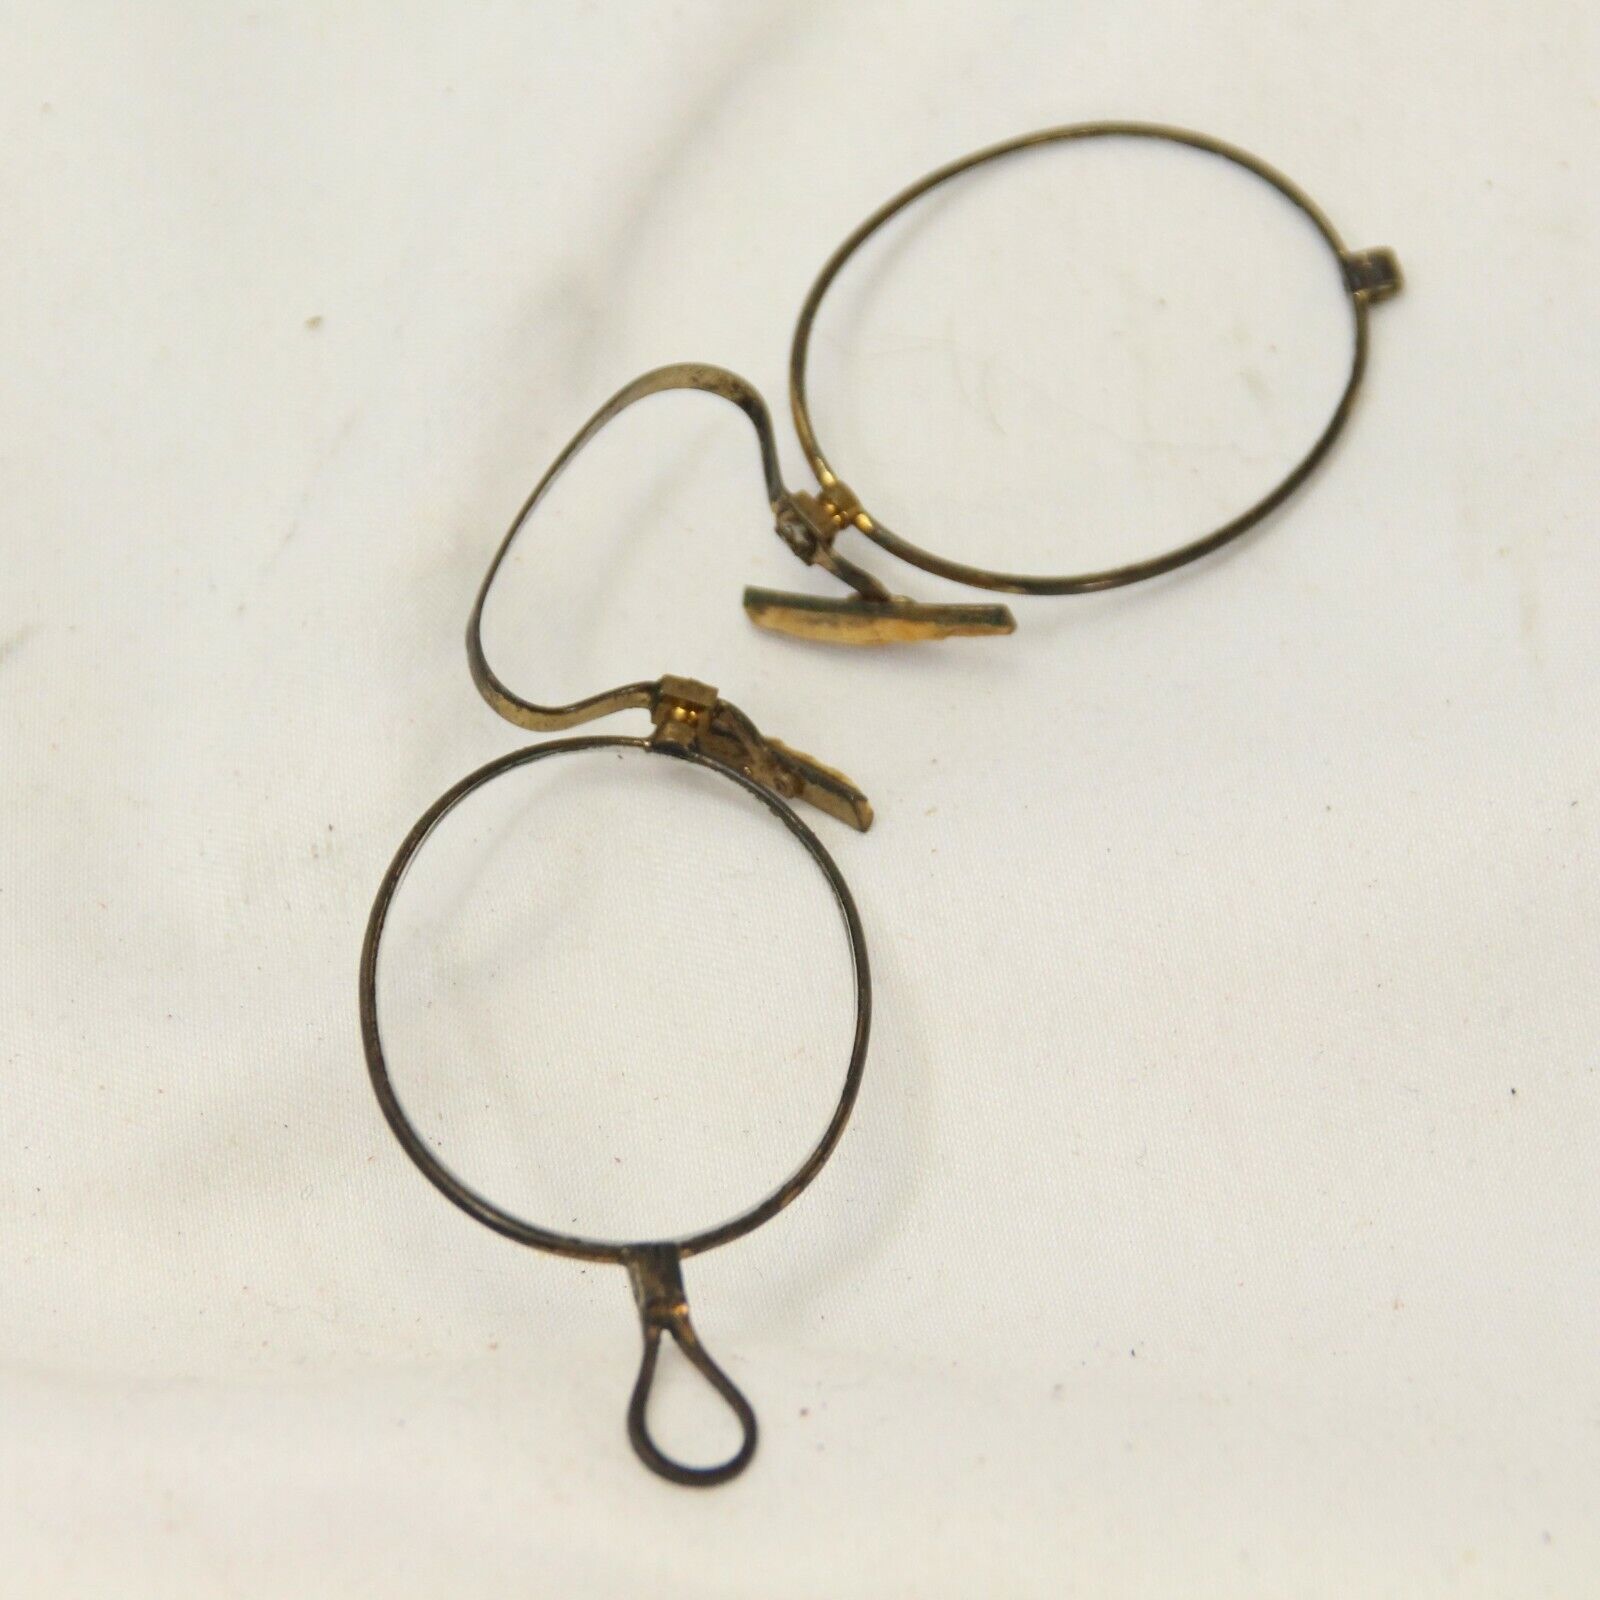 Vintage Antique Reading eyeglasses oval lens Magnifying